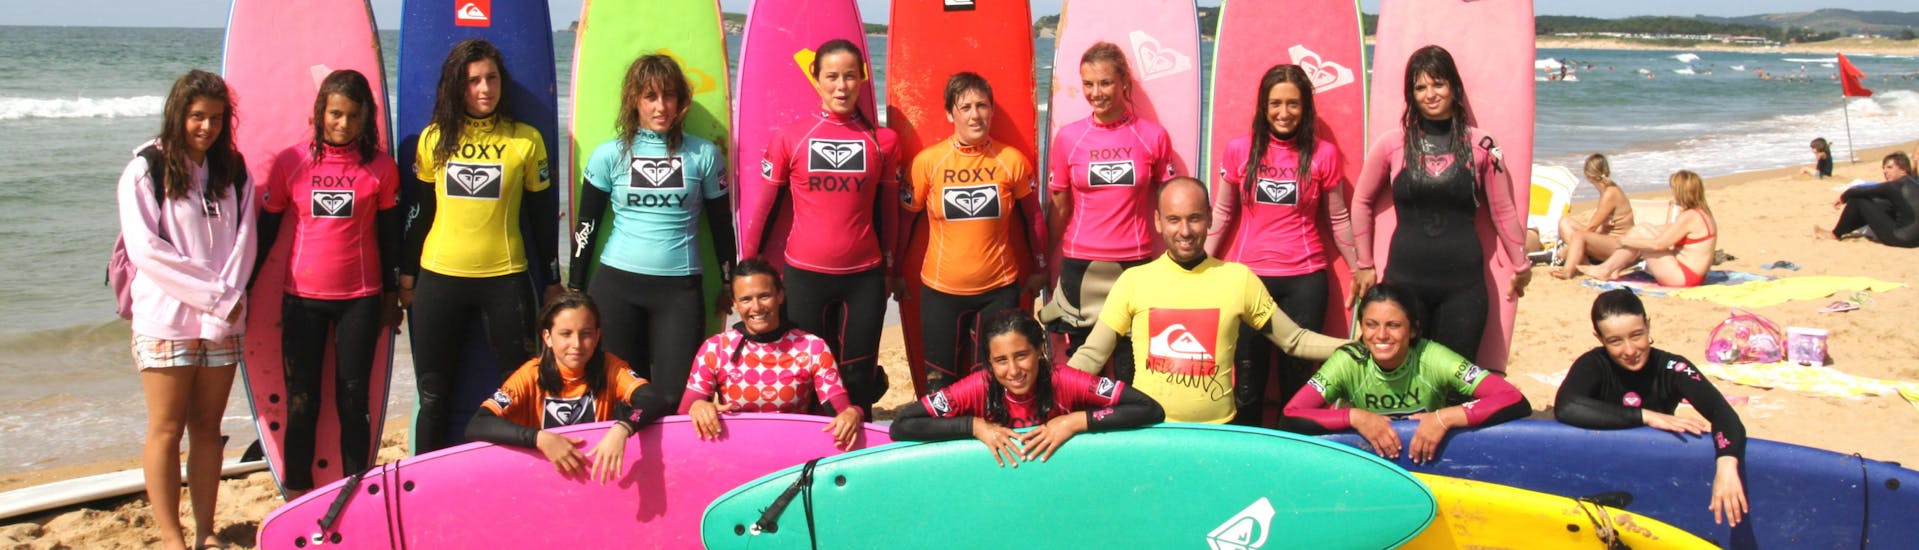 Teilnehmer des Surfunterrichts machen ein Gruppenfoto am Playa de Somo während einer Aktivität der Escuela Cántabra de Surf Quiksilver Roxy